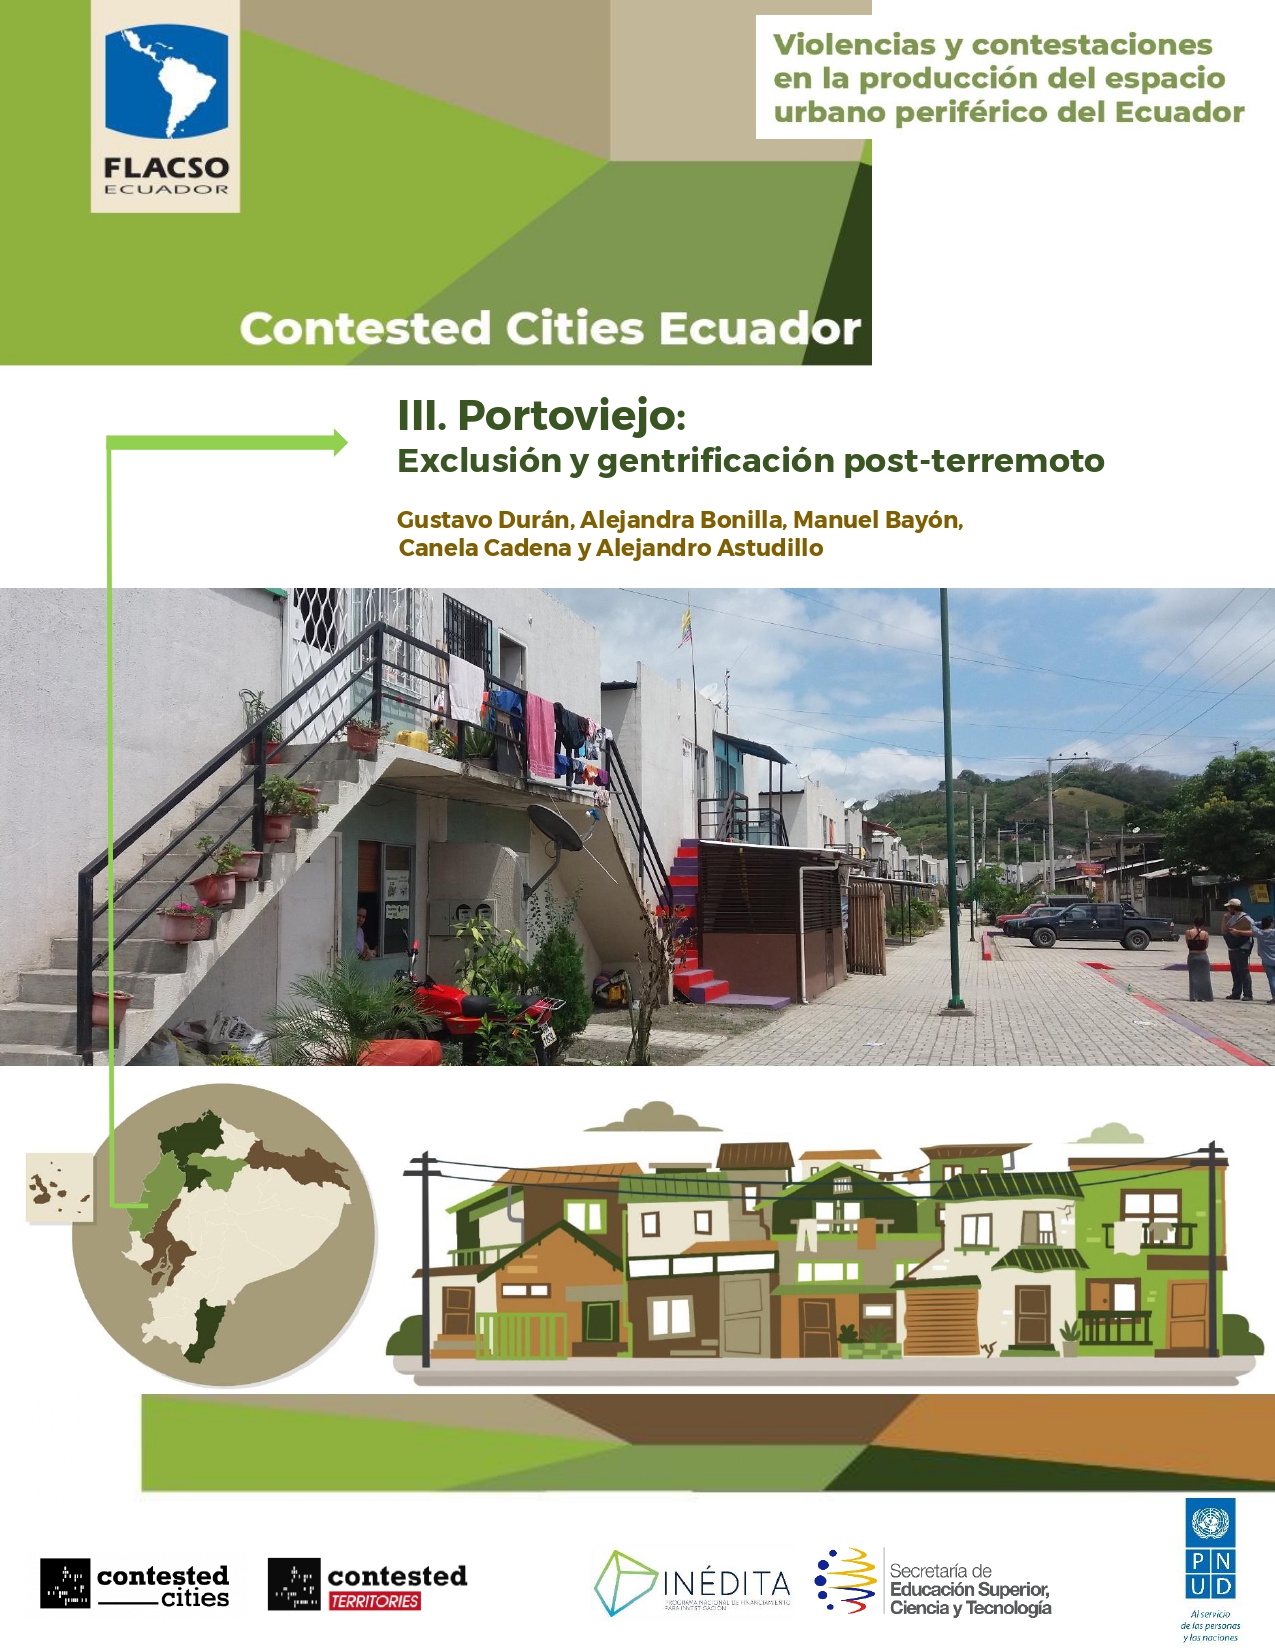 III. Portoviejo: Exclusión y gentrificación post-terremoto